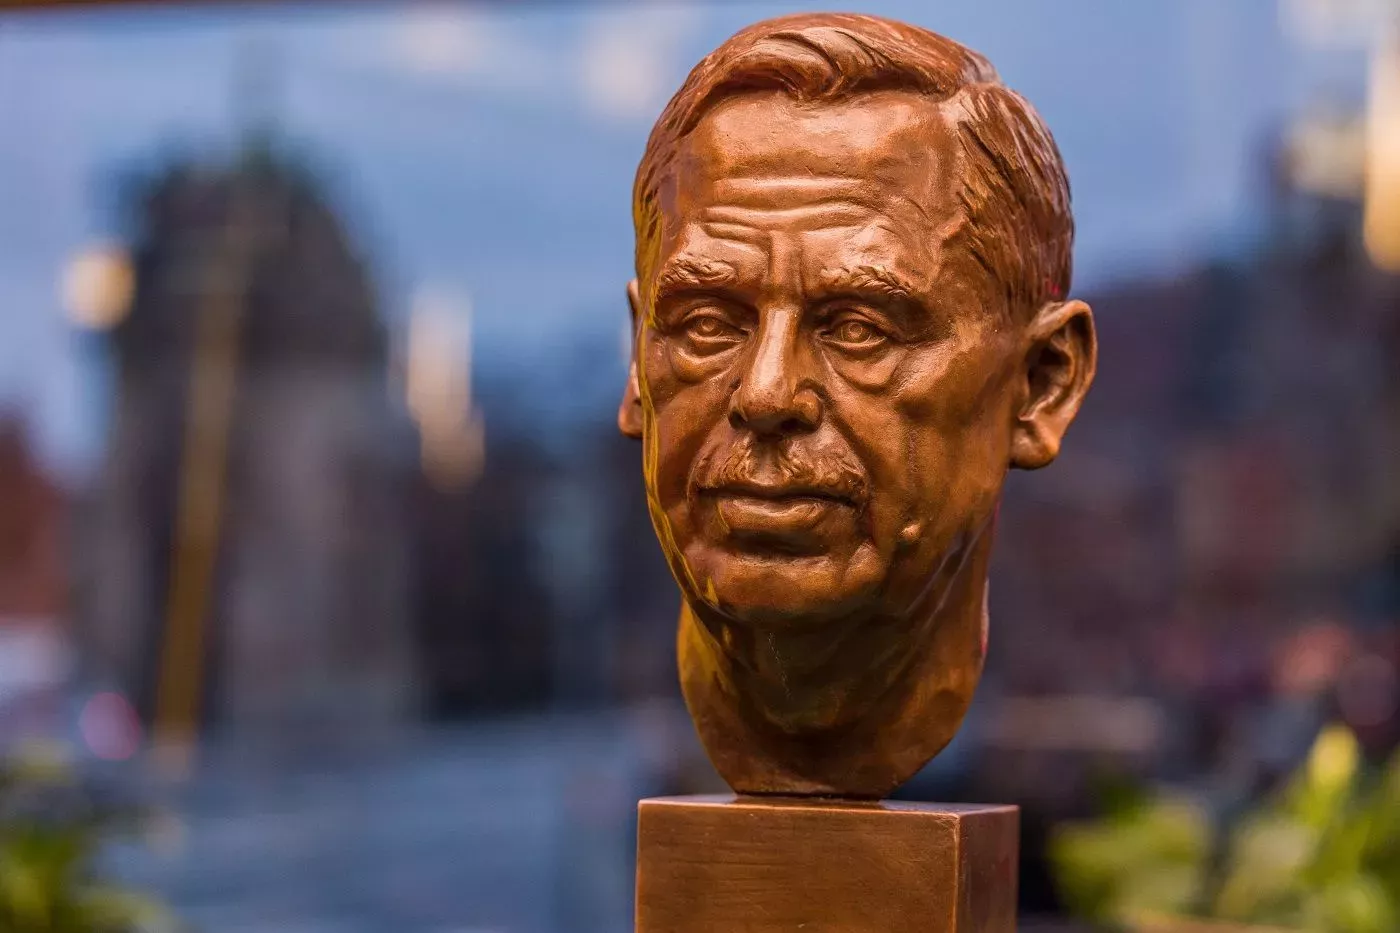 V Praze byla odhalena nová busta exprezidenta Václava Havla. (17.11.2021)